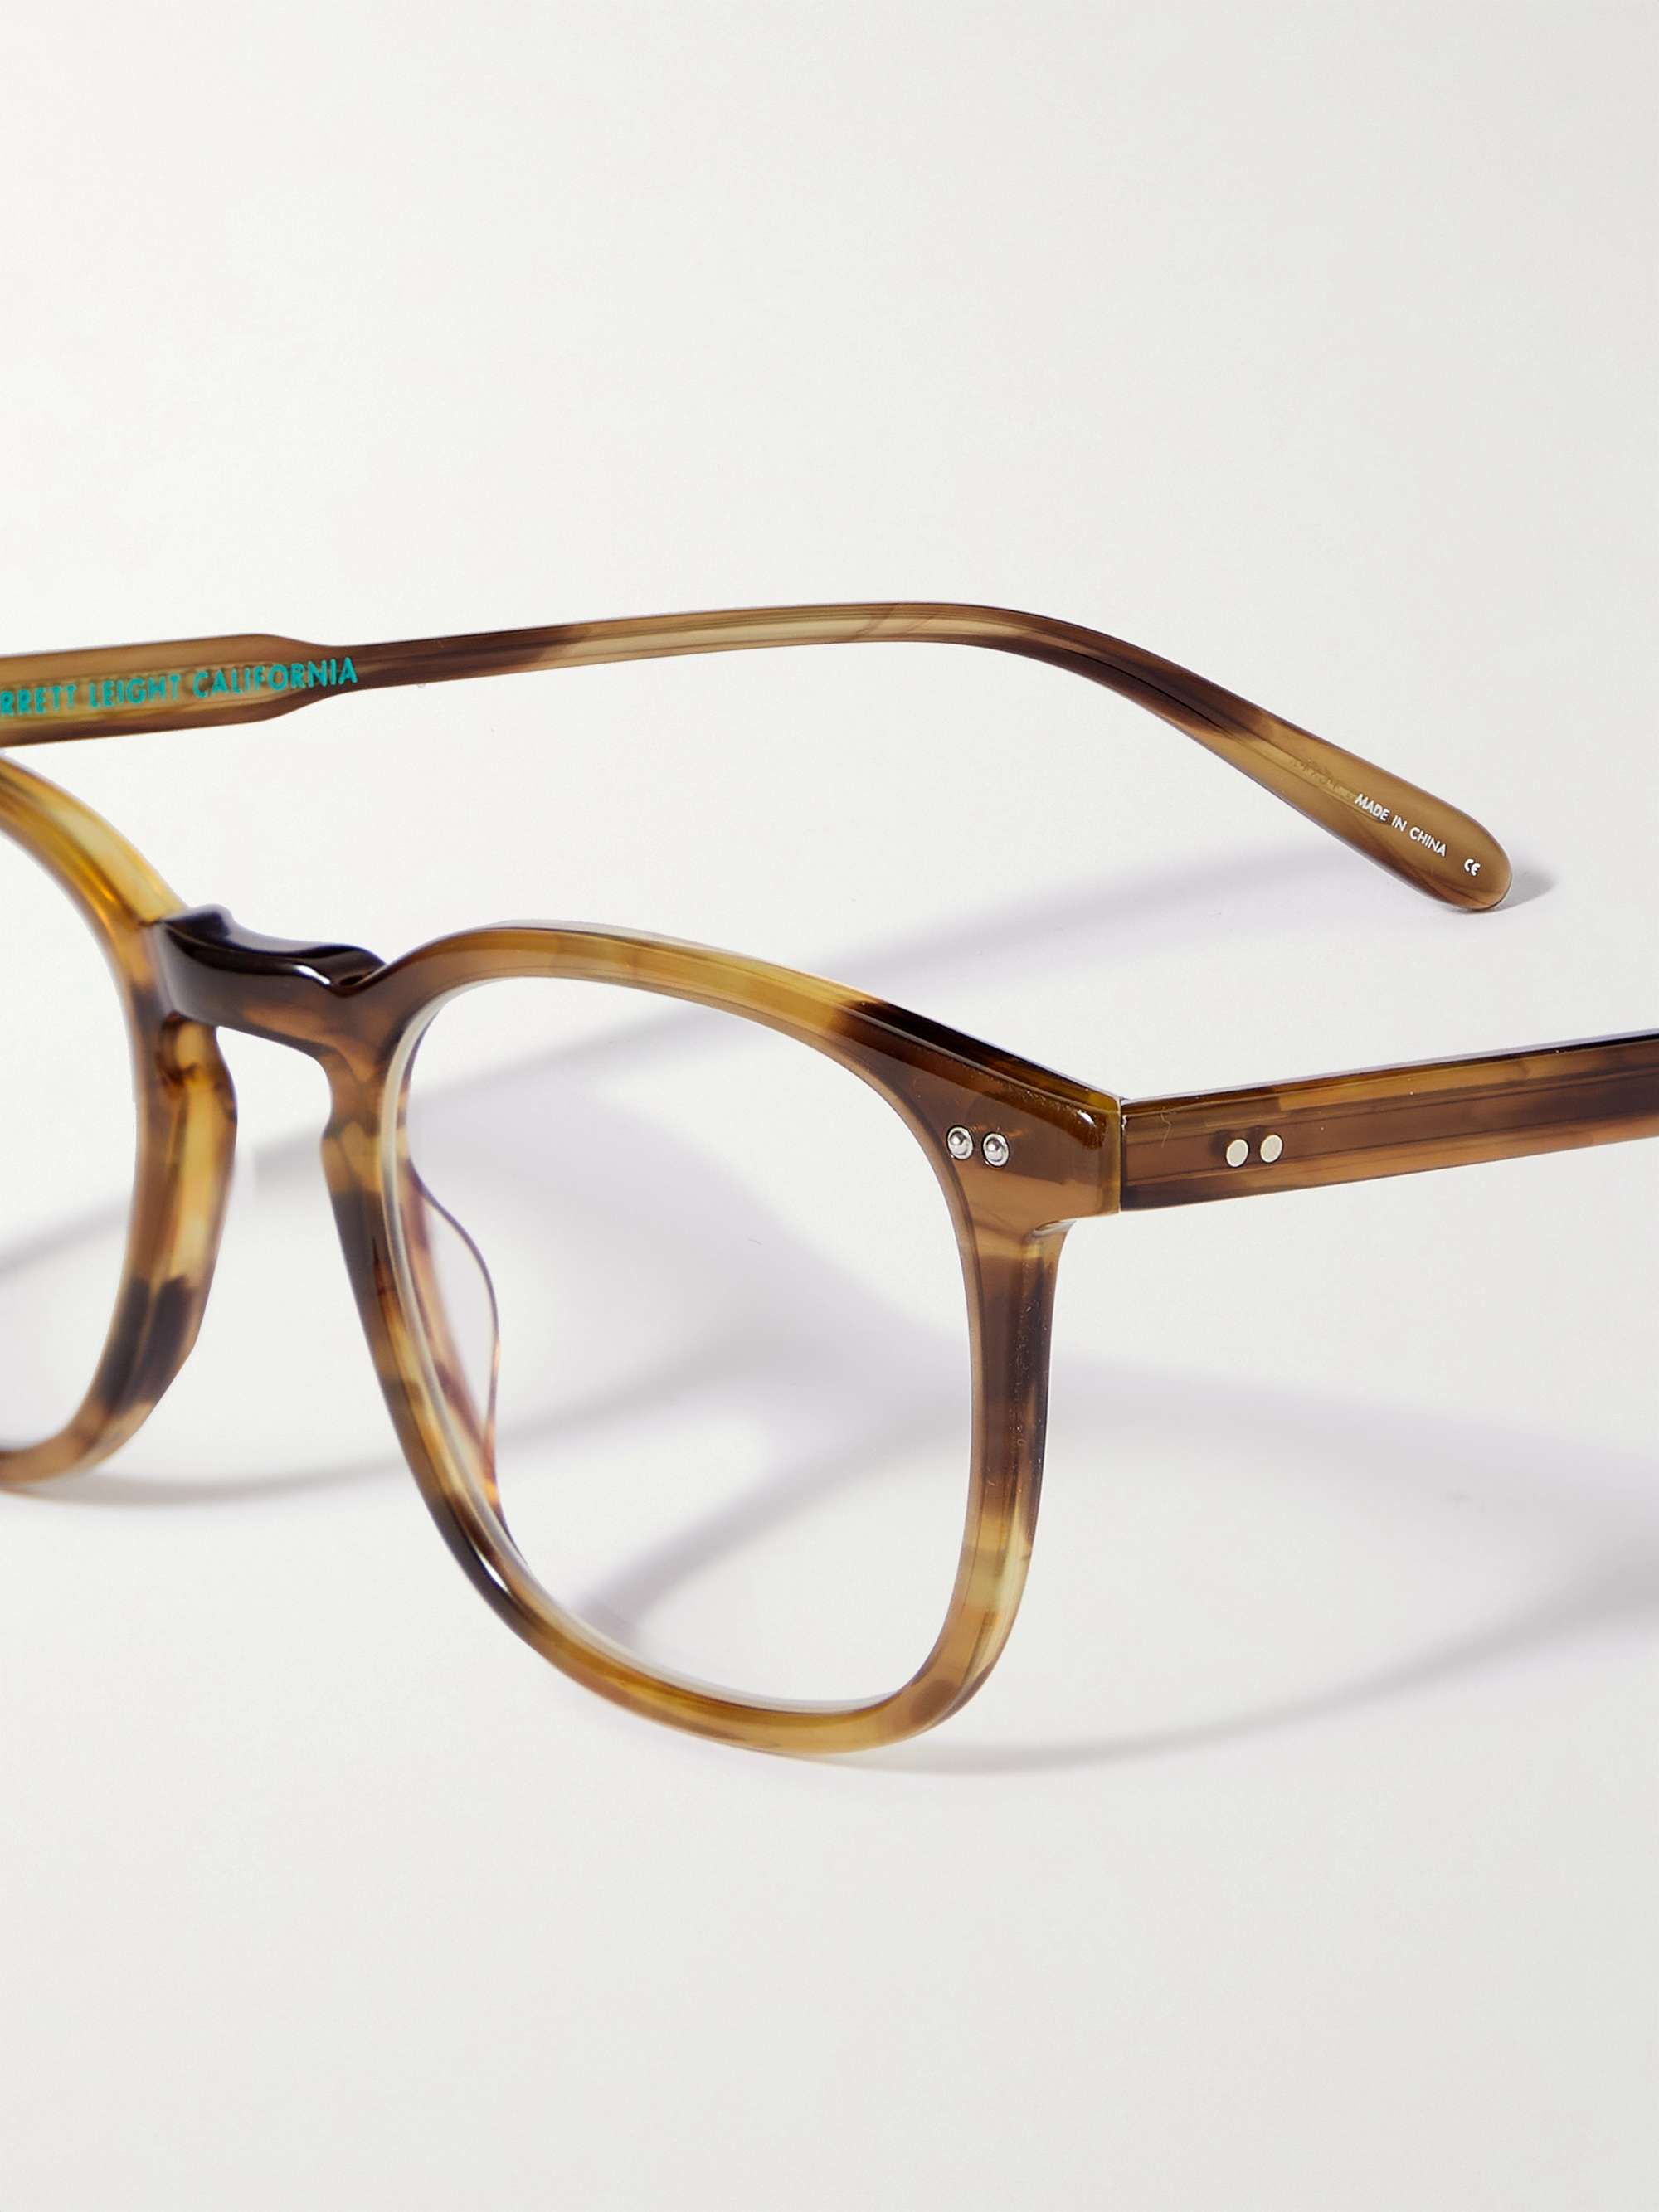 GARRETT LEIGHT CALIFORNIA OPTICAL Ruskin Square-Frame Tortoiseshell  Acetate Optical glasses